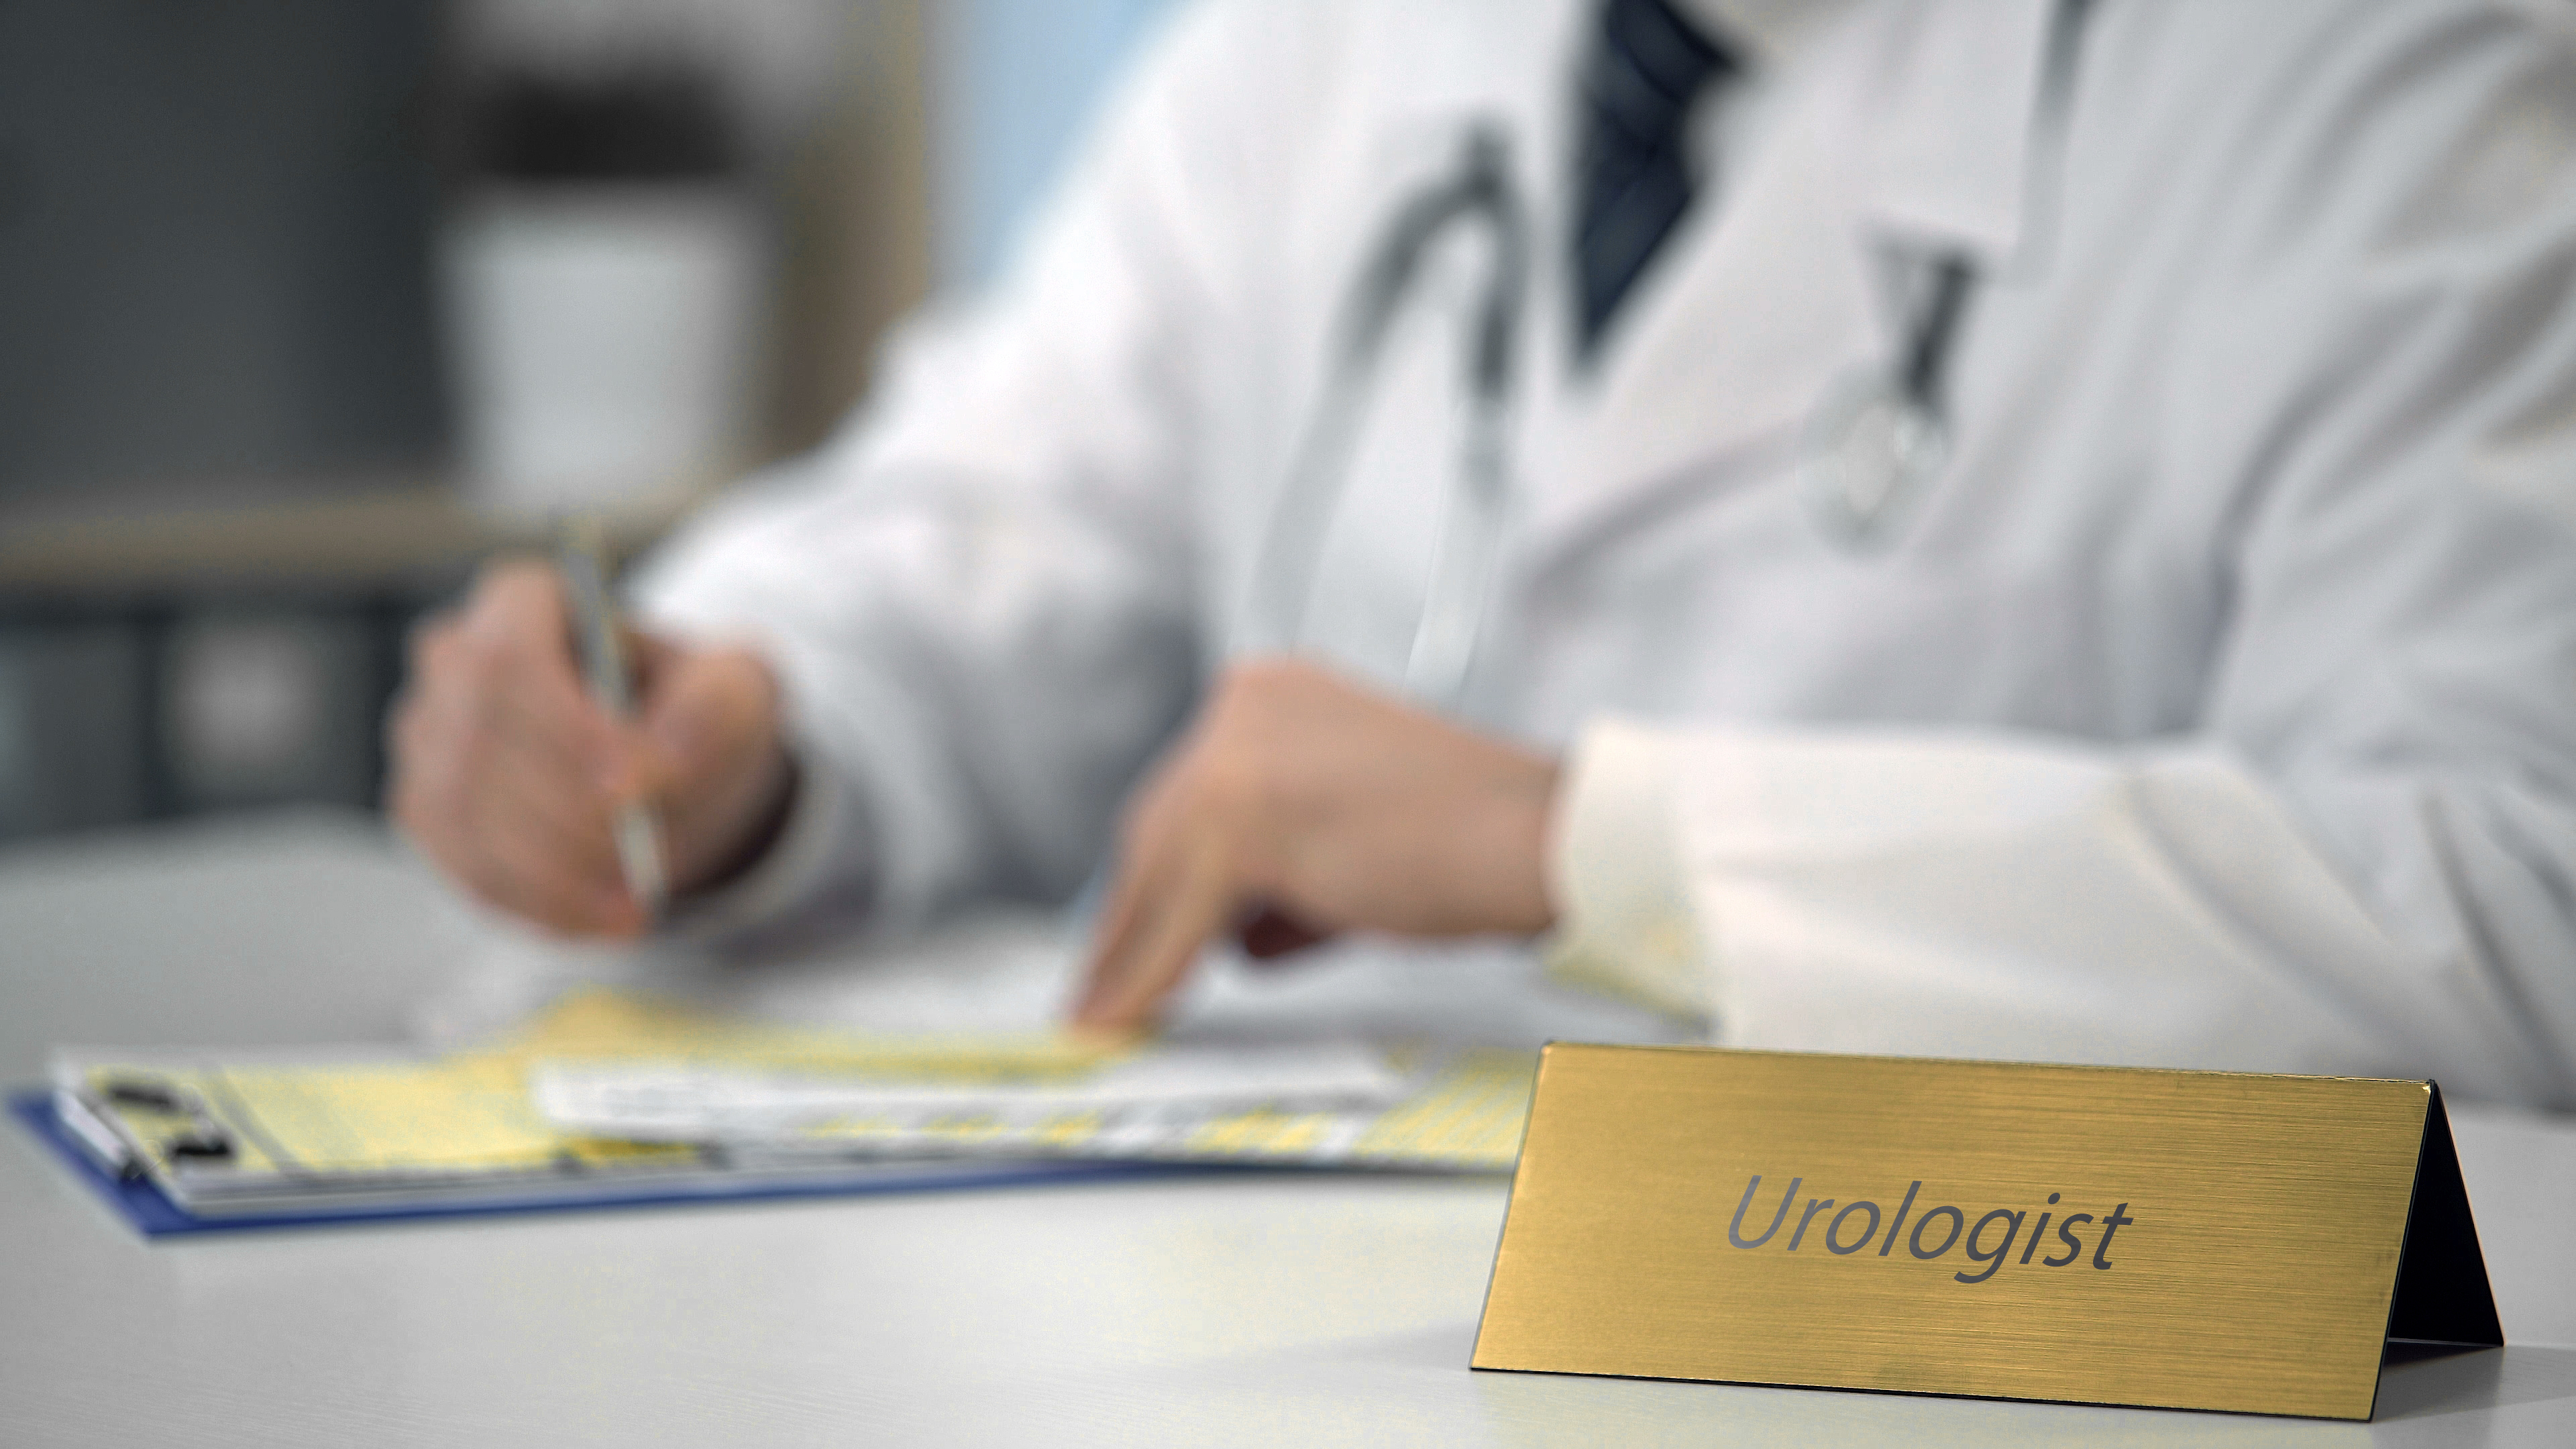 Como qual frequência é indicada a consulta com urologista?